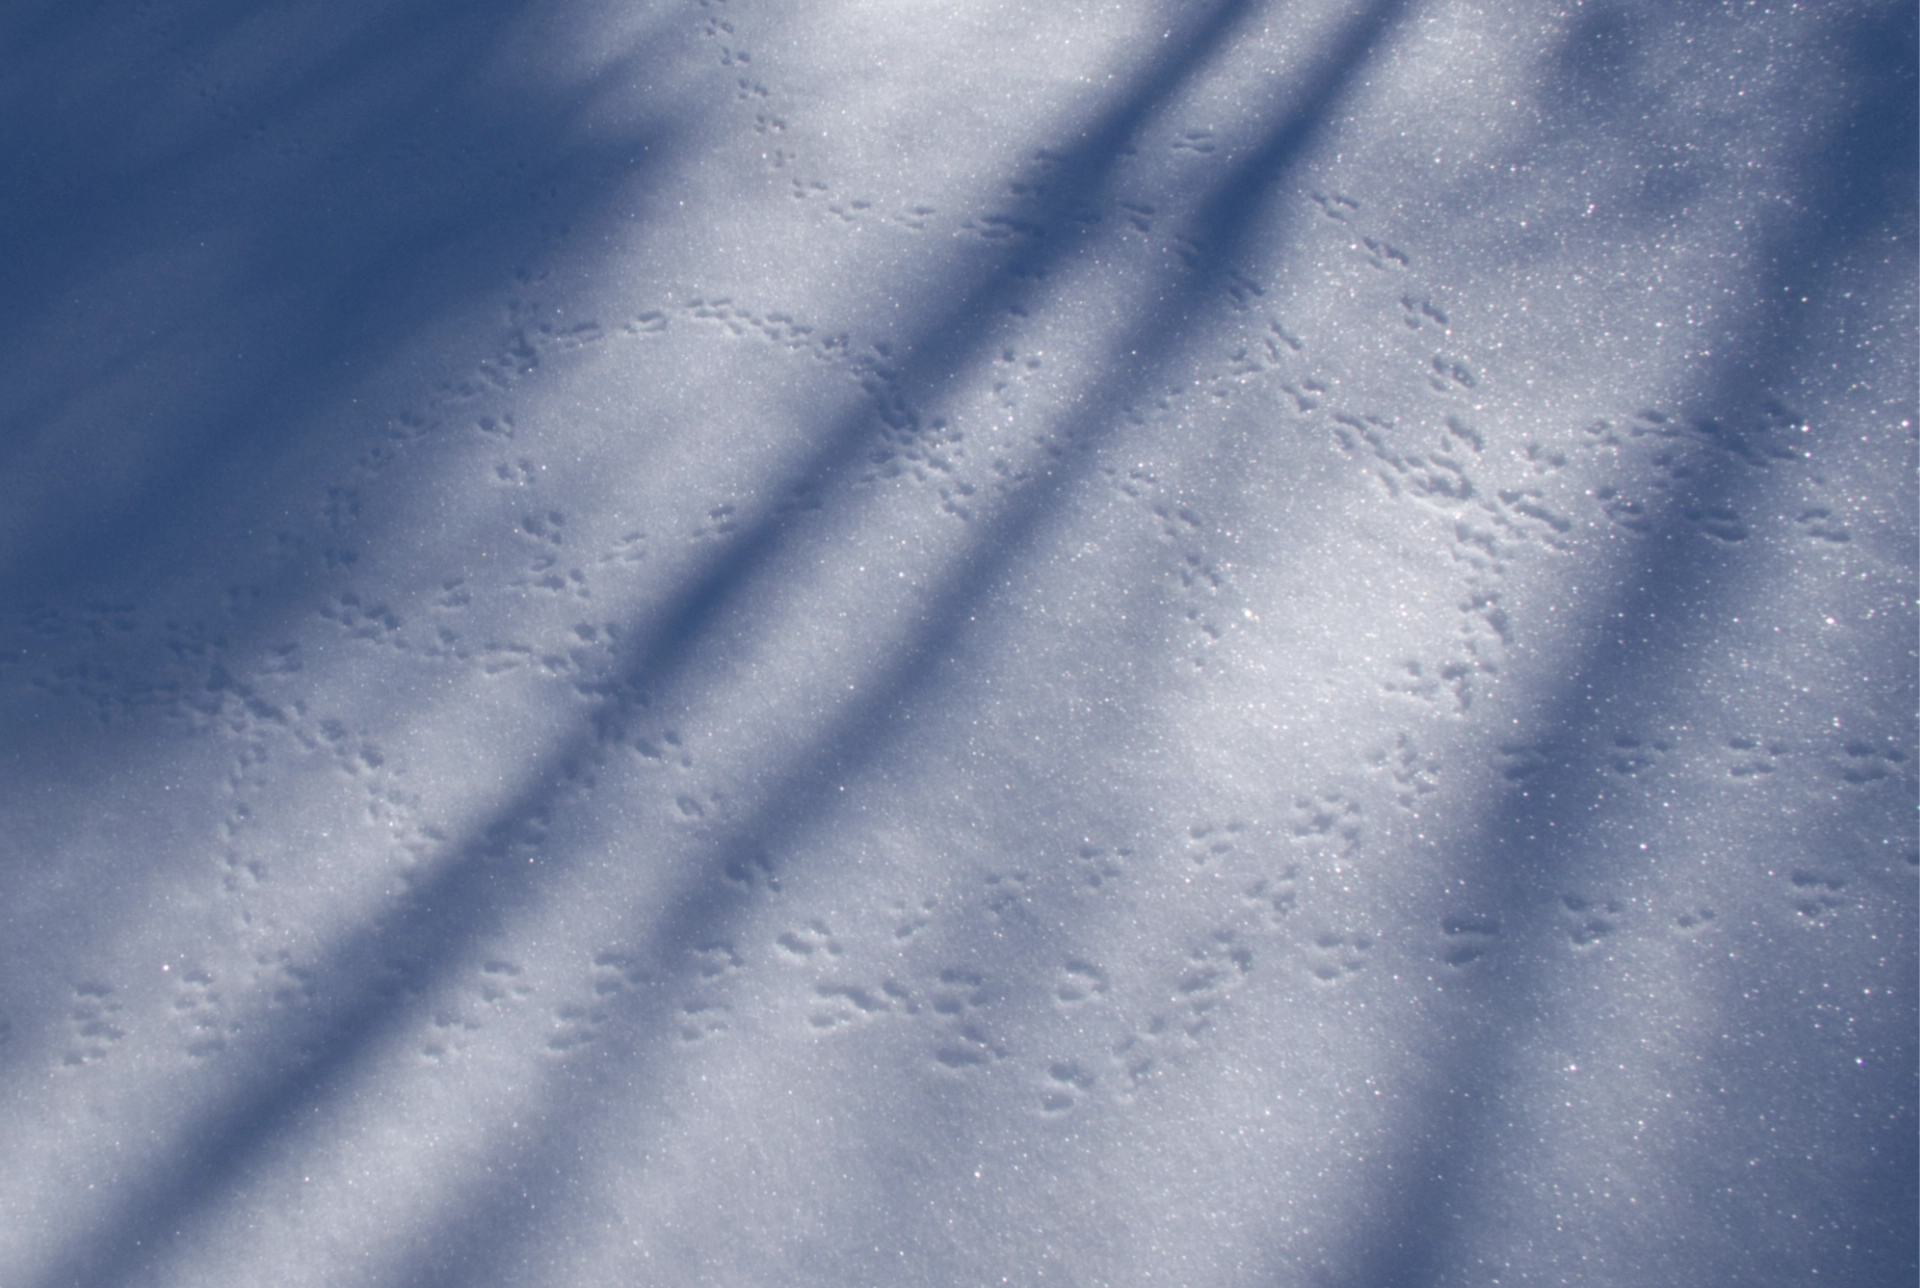 tiny tracks in the snow